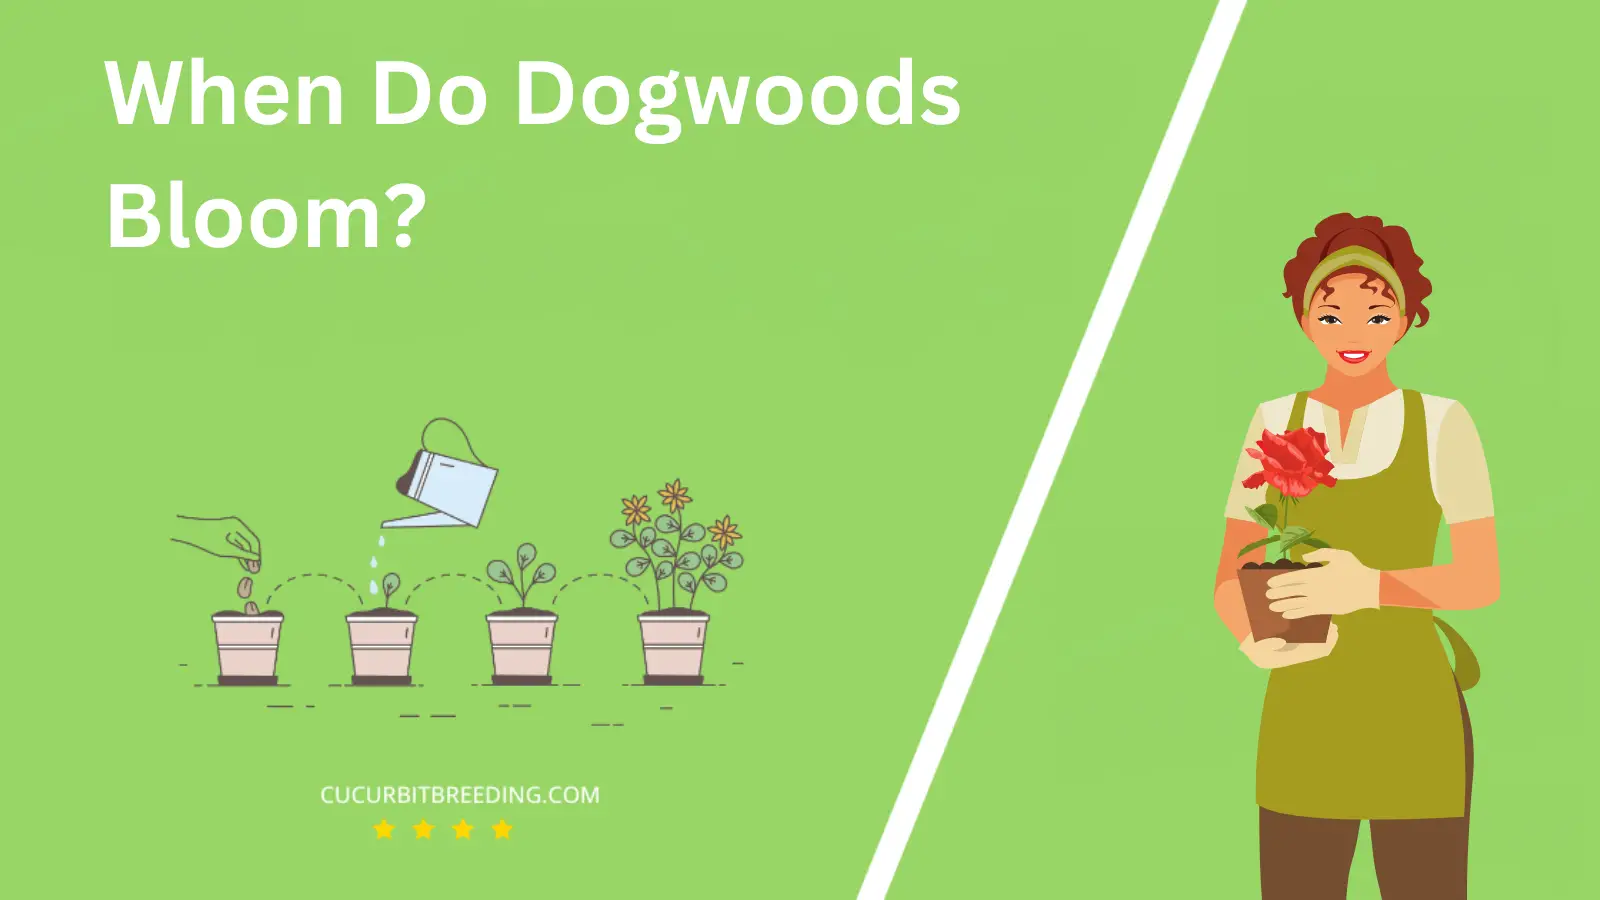 When Do Dogwoods Bloom?